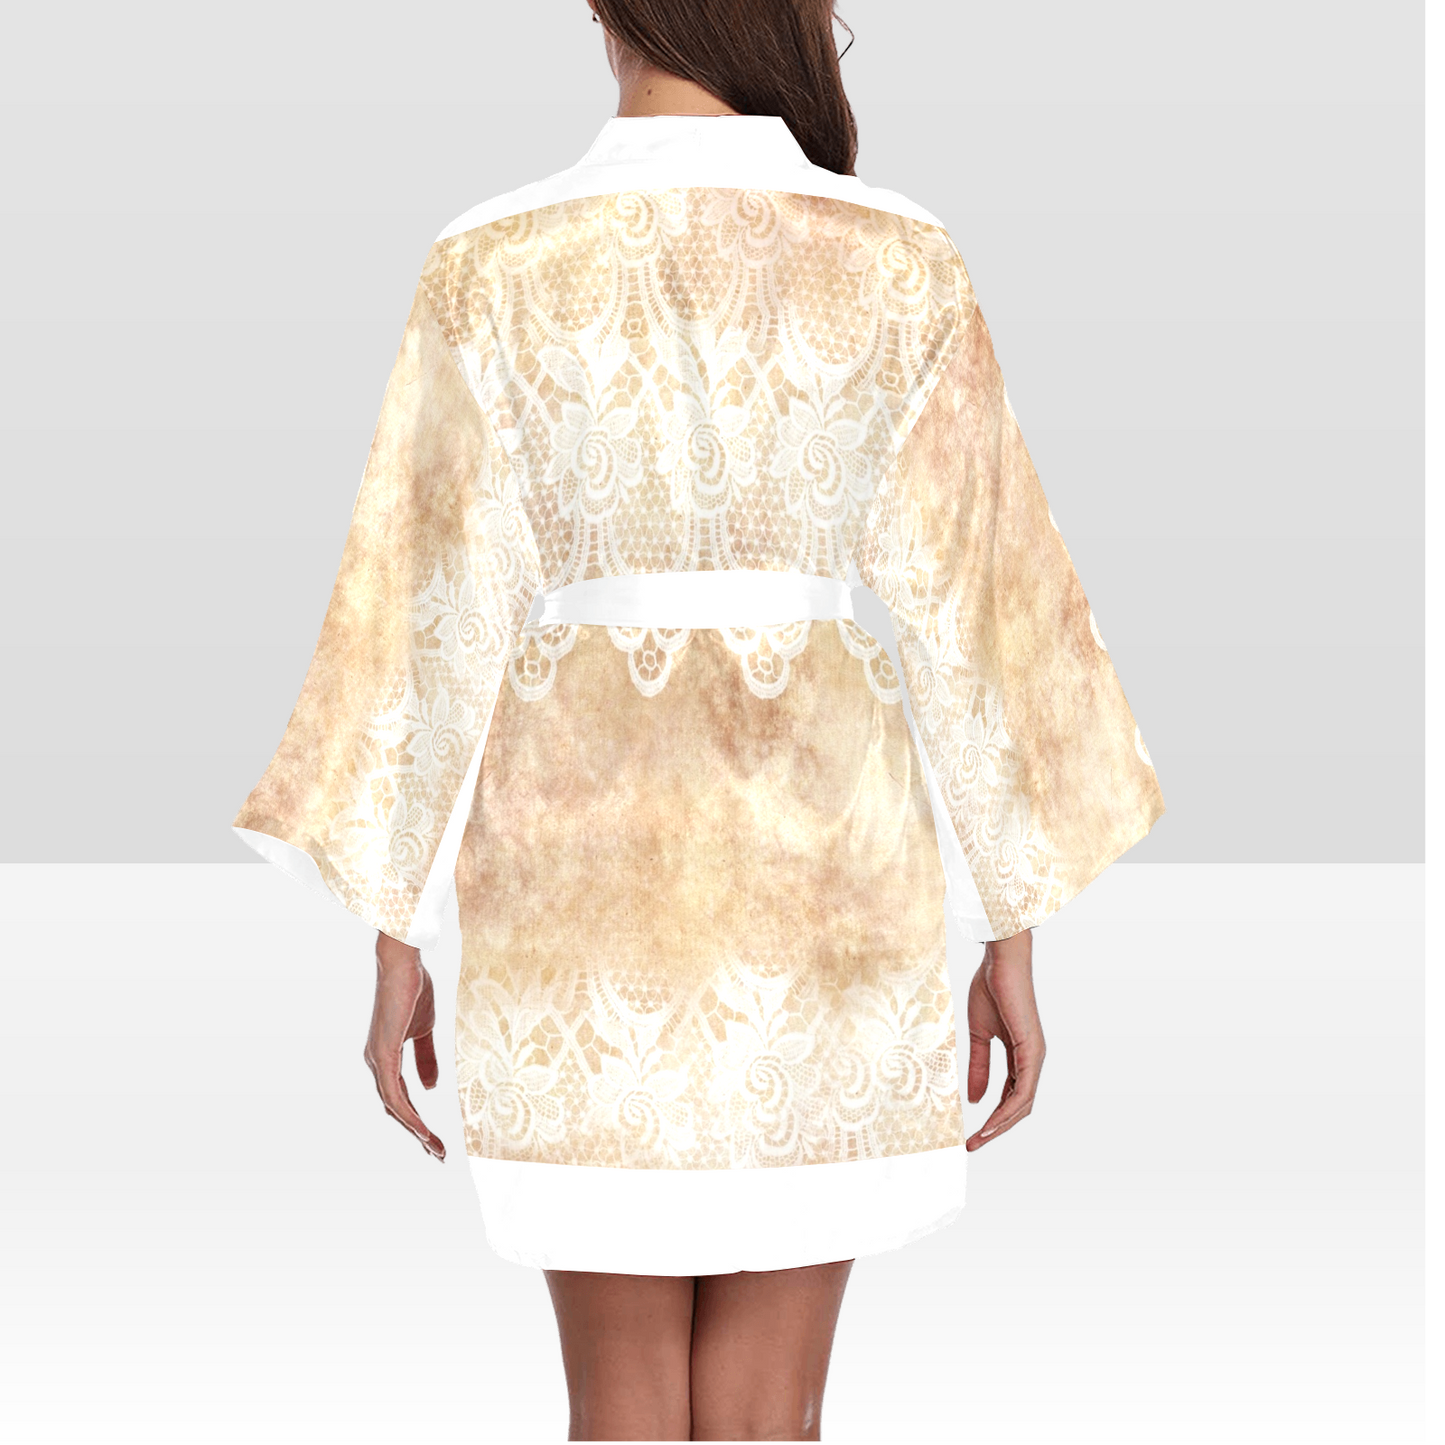 Victorian Lace Kimono Robe, Black or White Trim, Sizes XS to 2XL, Design 30